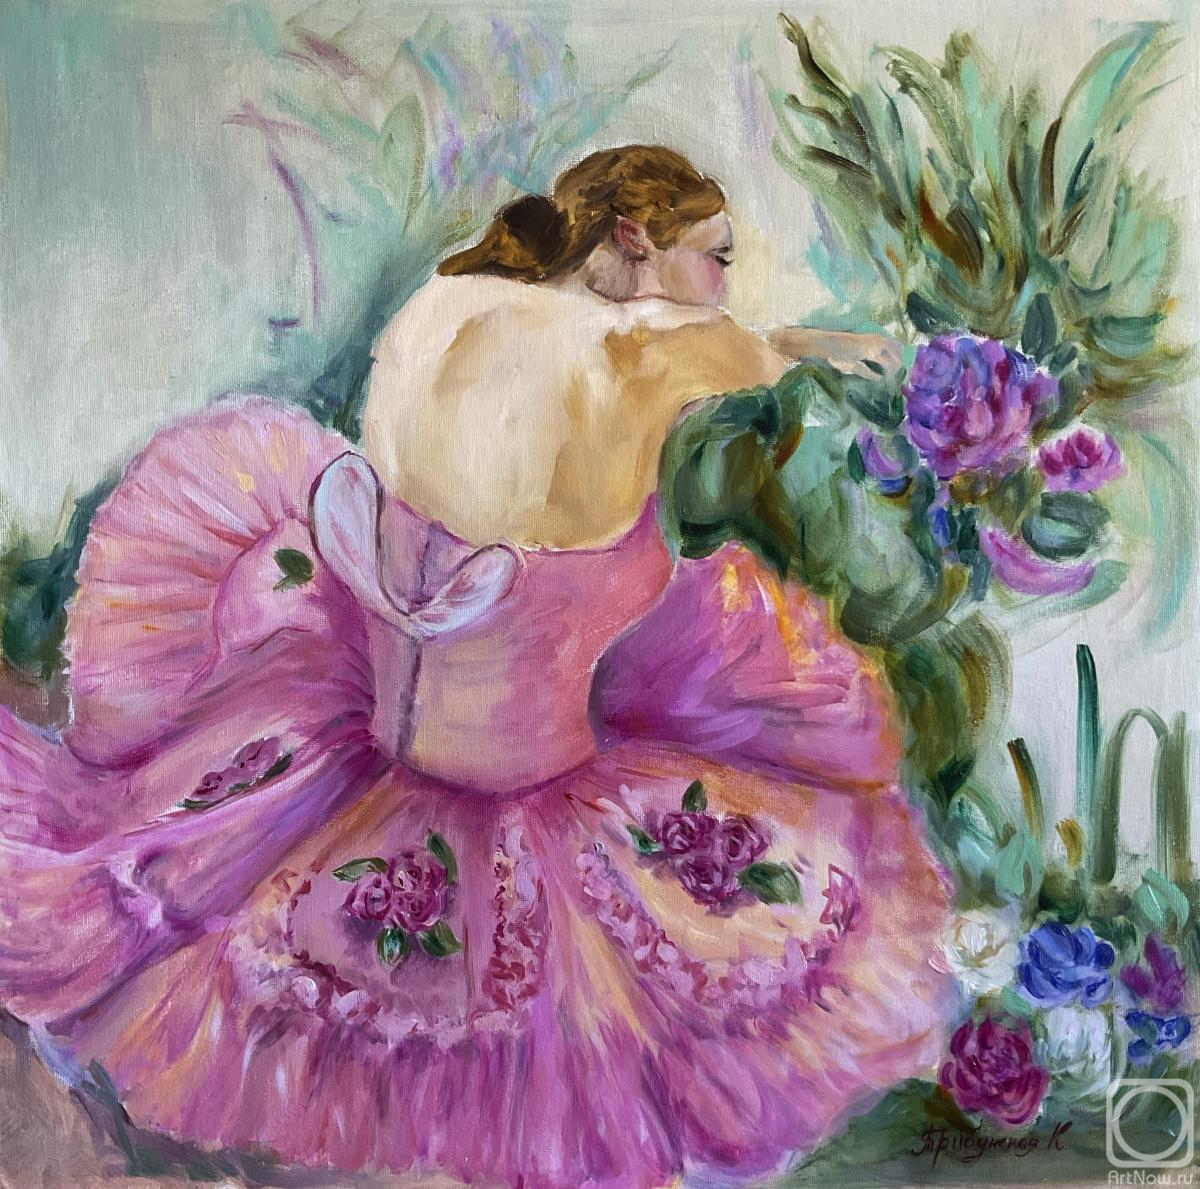 Tribunskaya Kseniya. Peony ballerina